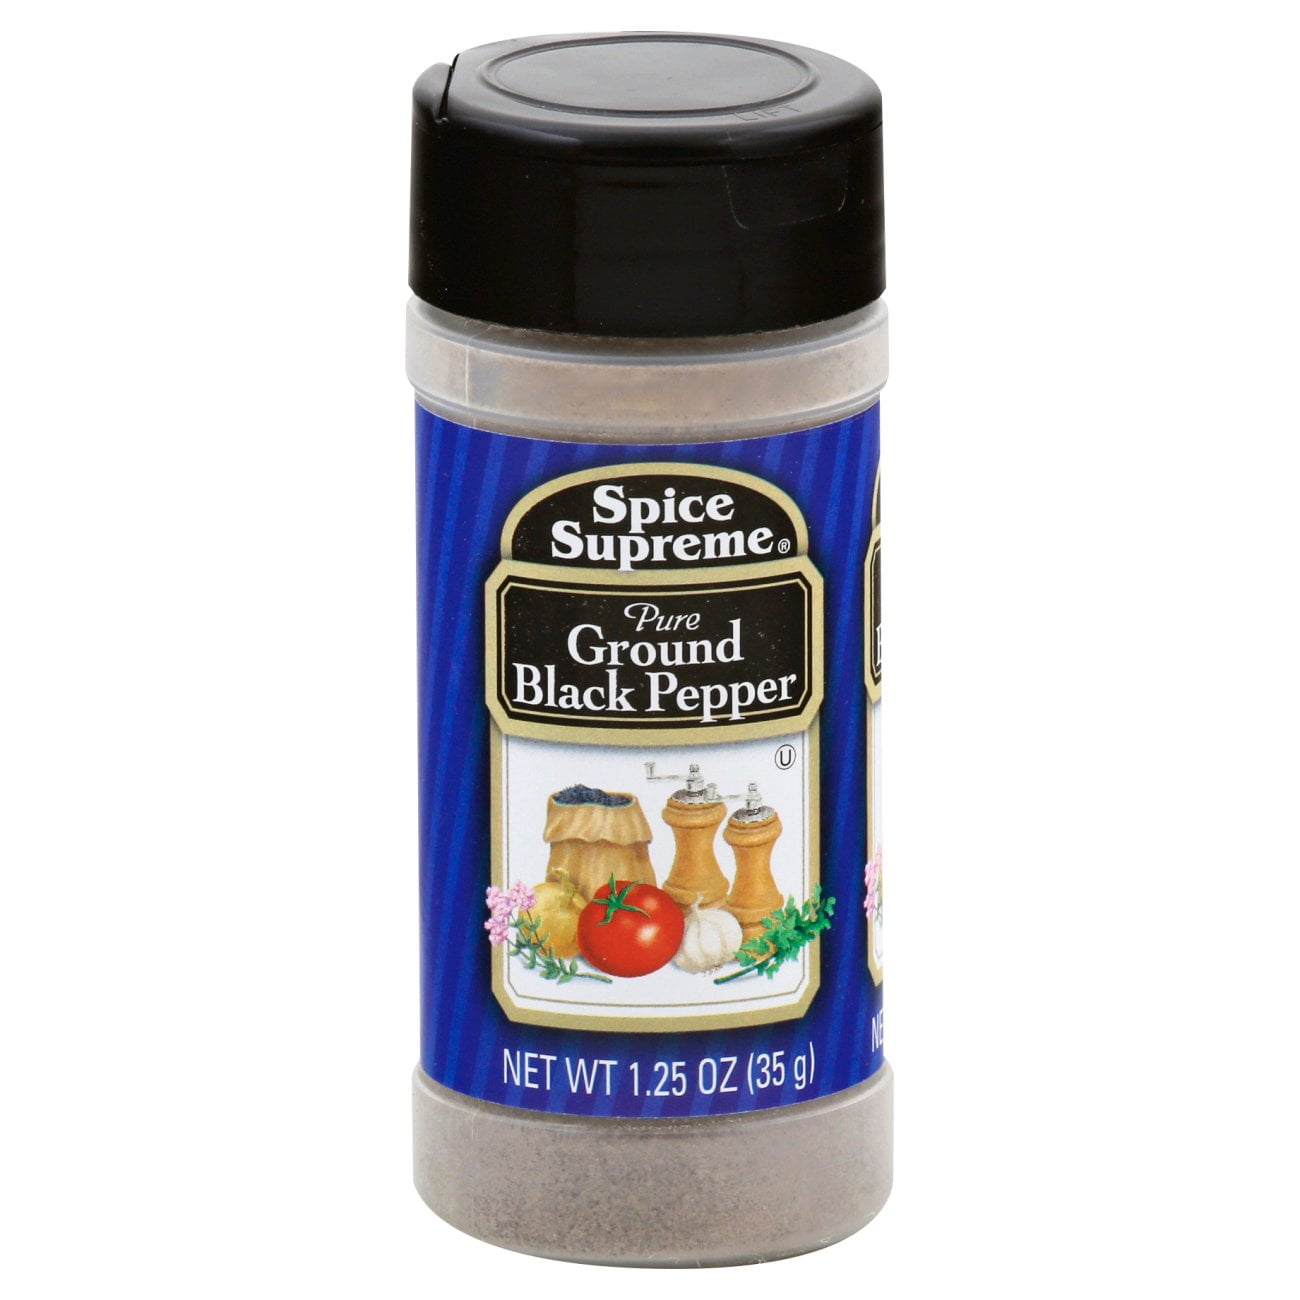 Spice Supreme Pure Ground Black Pepper (57g)